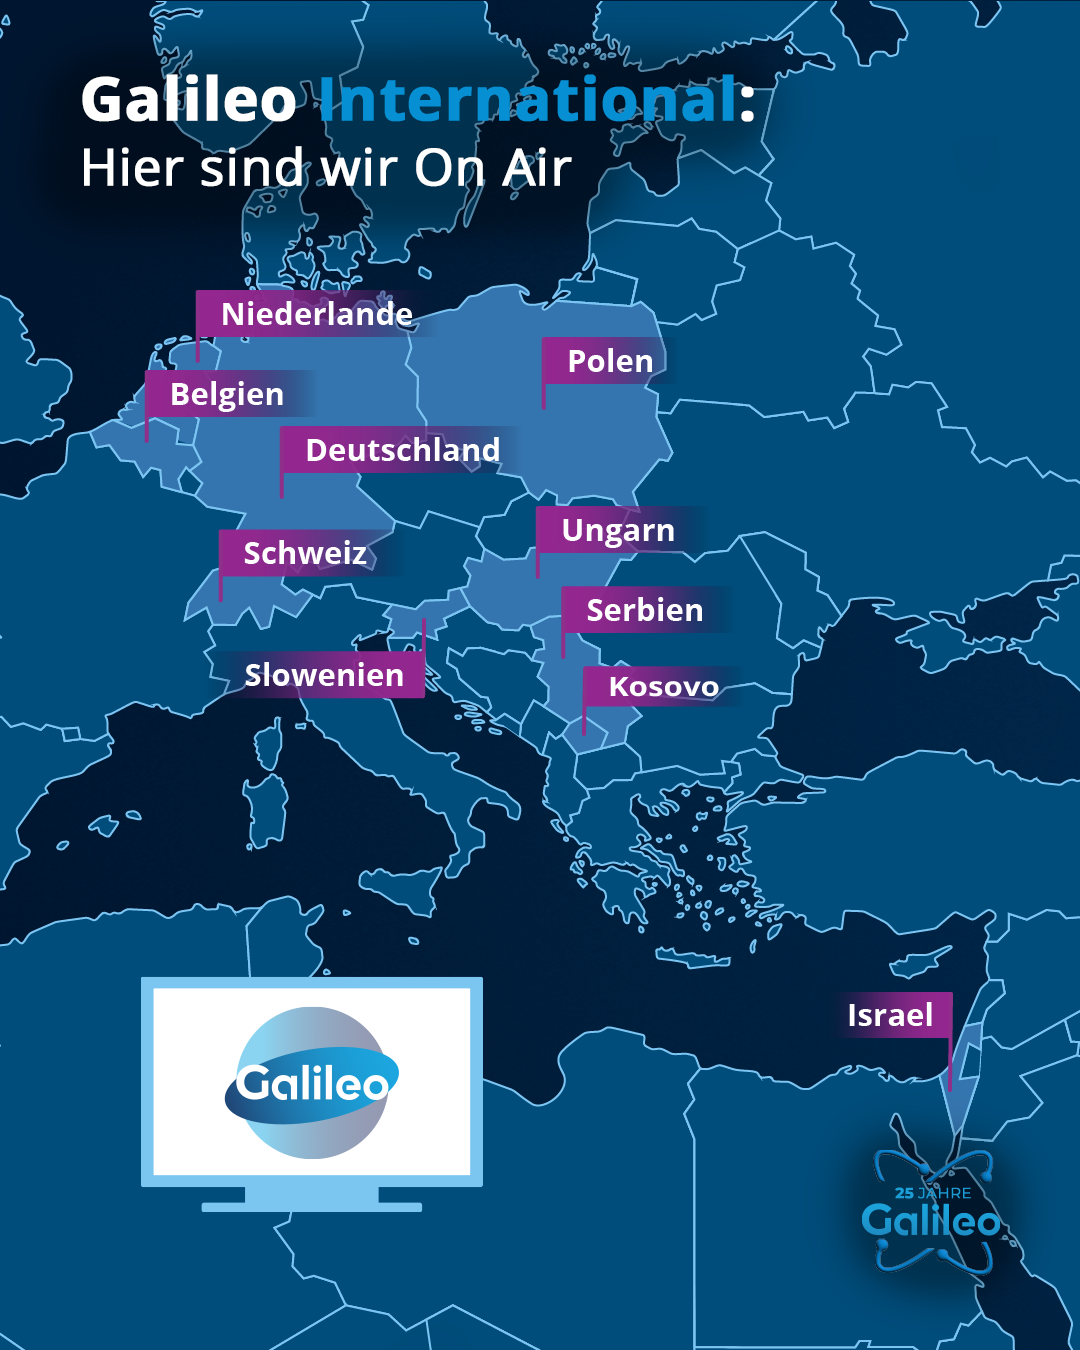 In diesen Ländern wird Galileo ausgestrahlt.